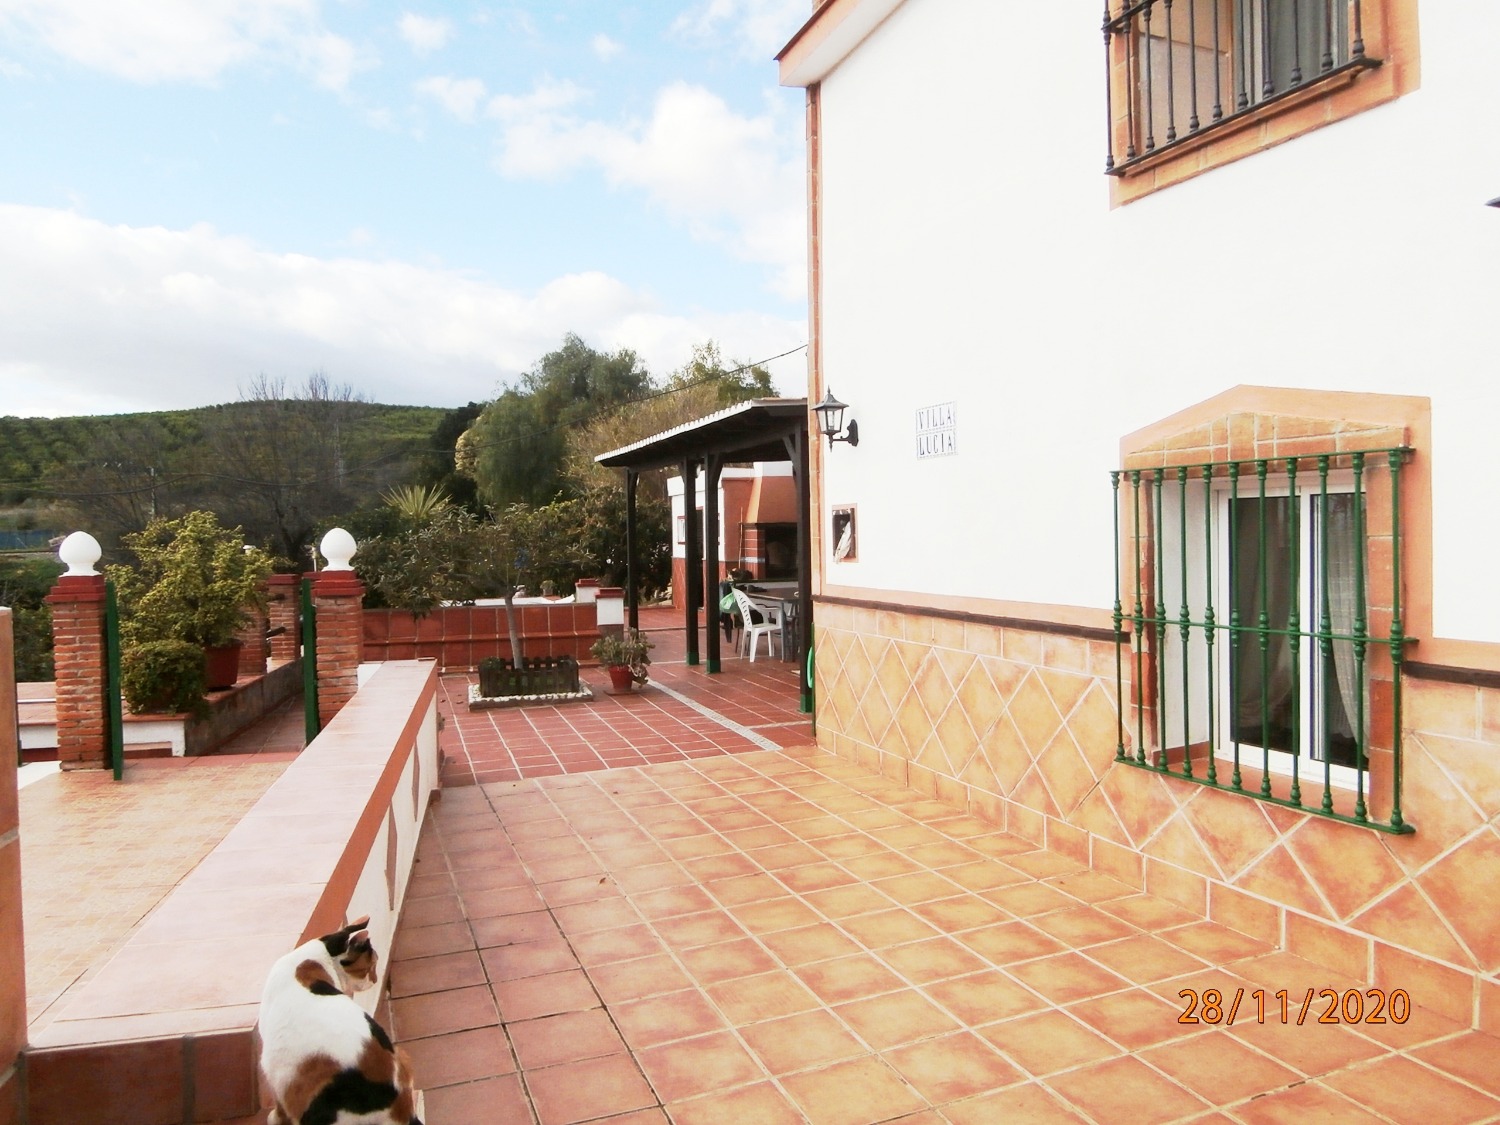 Stort parhus i andalusisk stil med pool, åkermark, helt inhägnad ca 3 220 m2, bra tillgång.